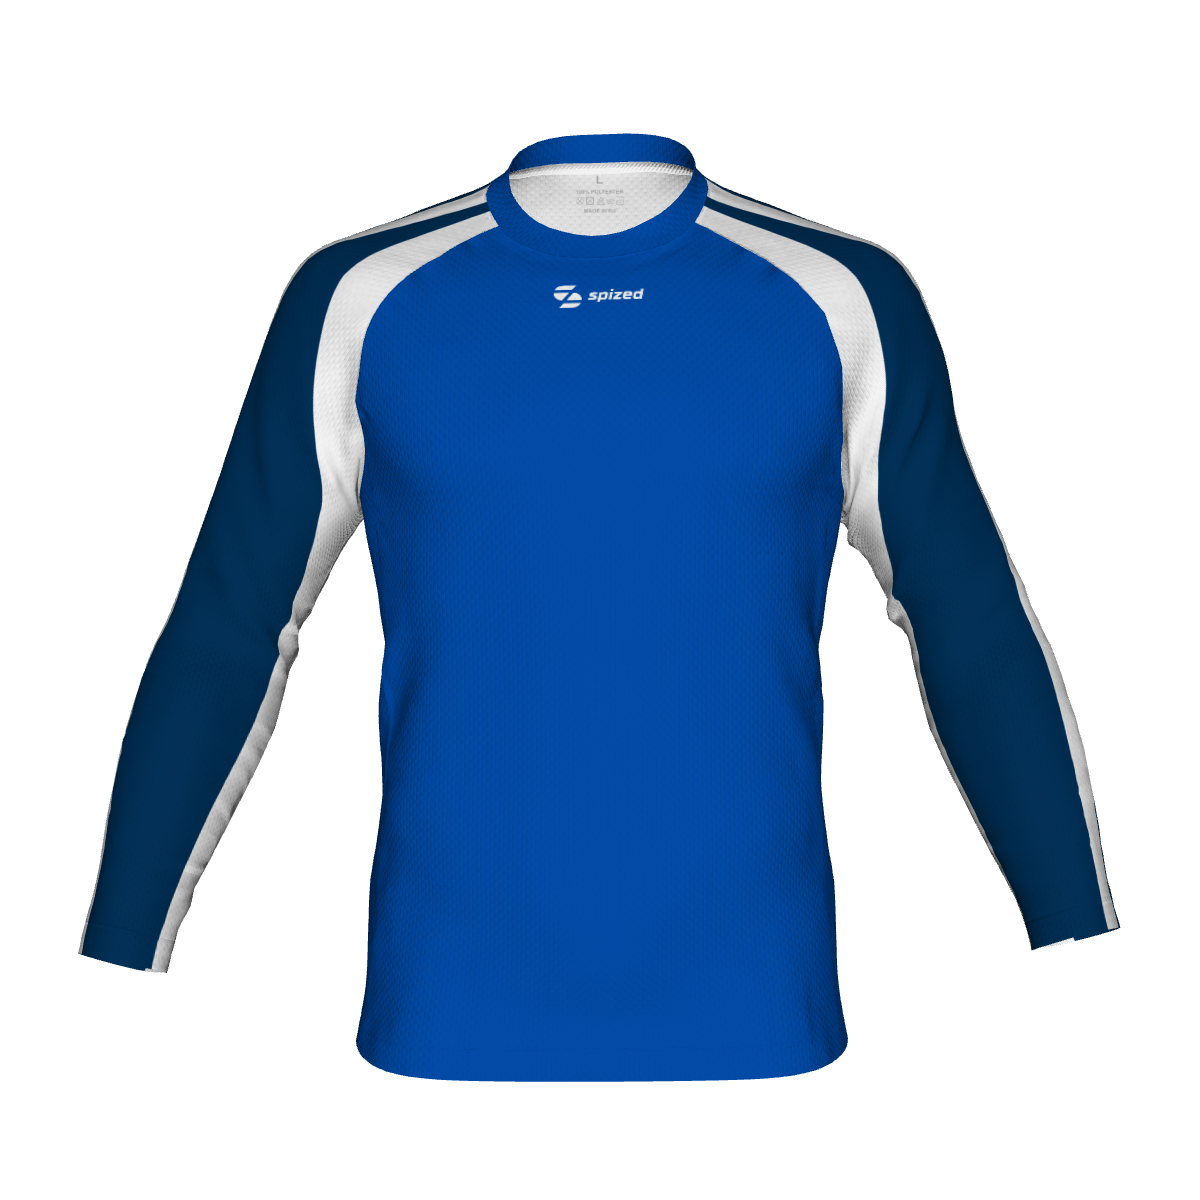 Viborg men's handball jersey l/s